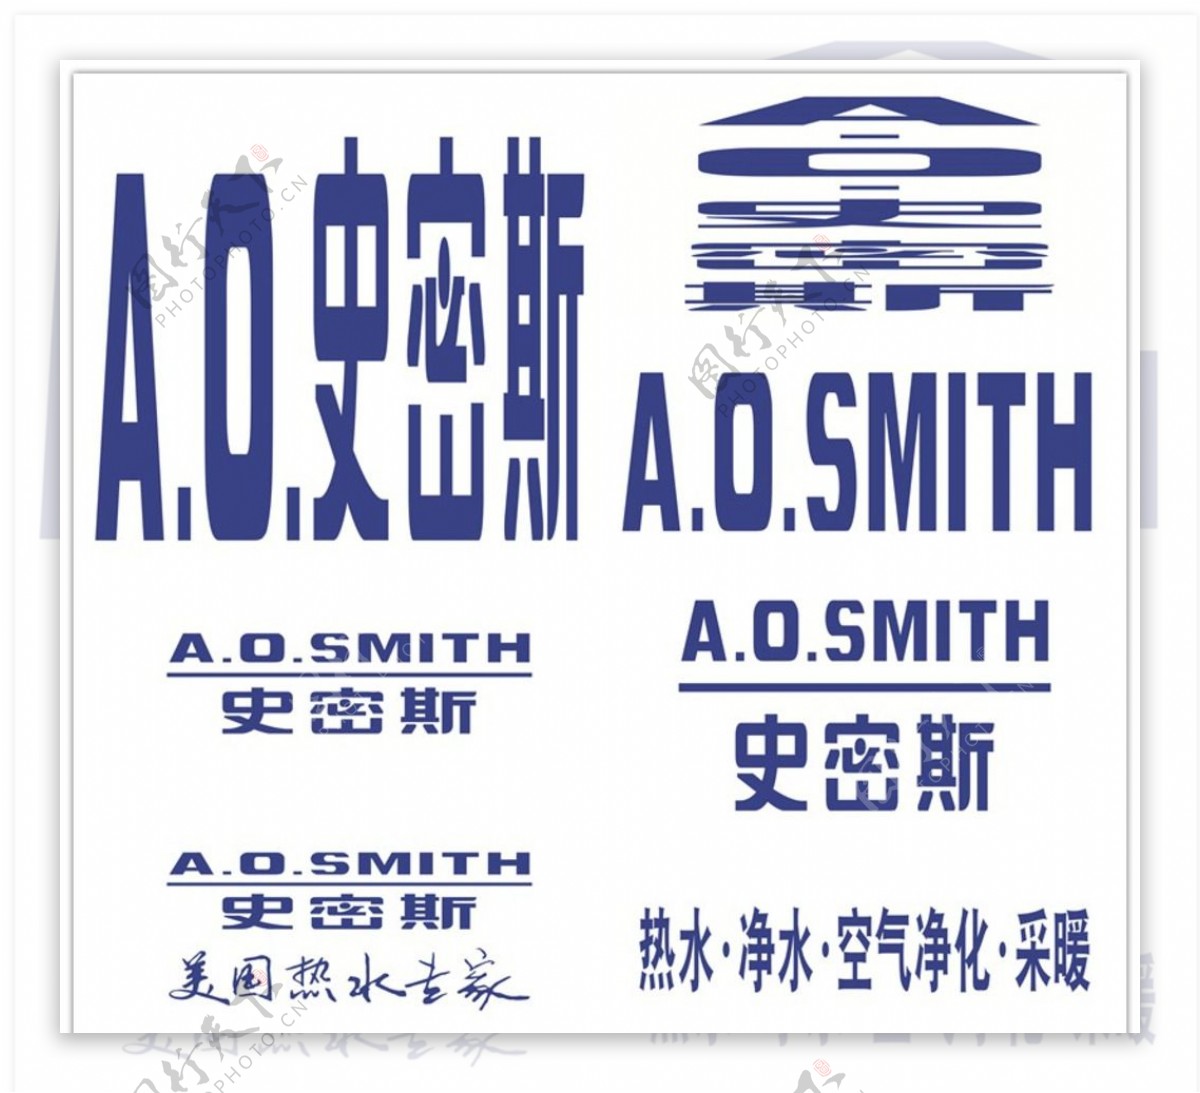 史密斯logo最终修正版